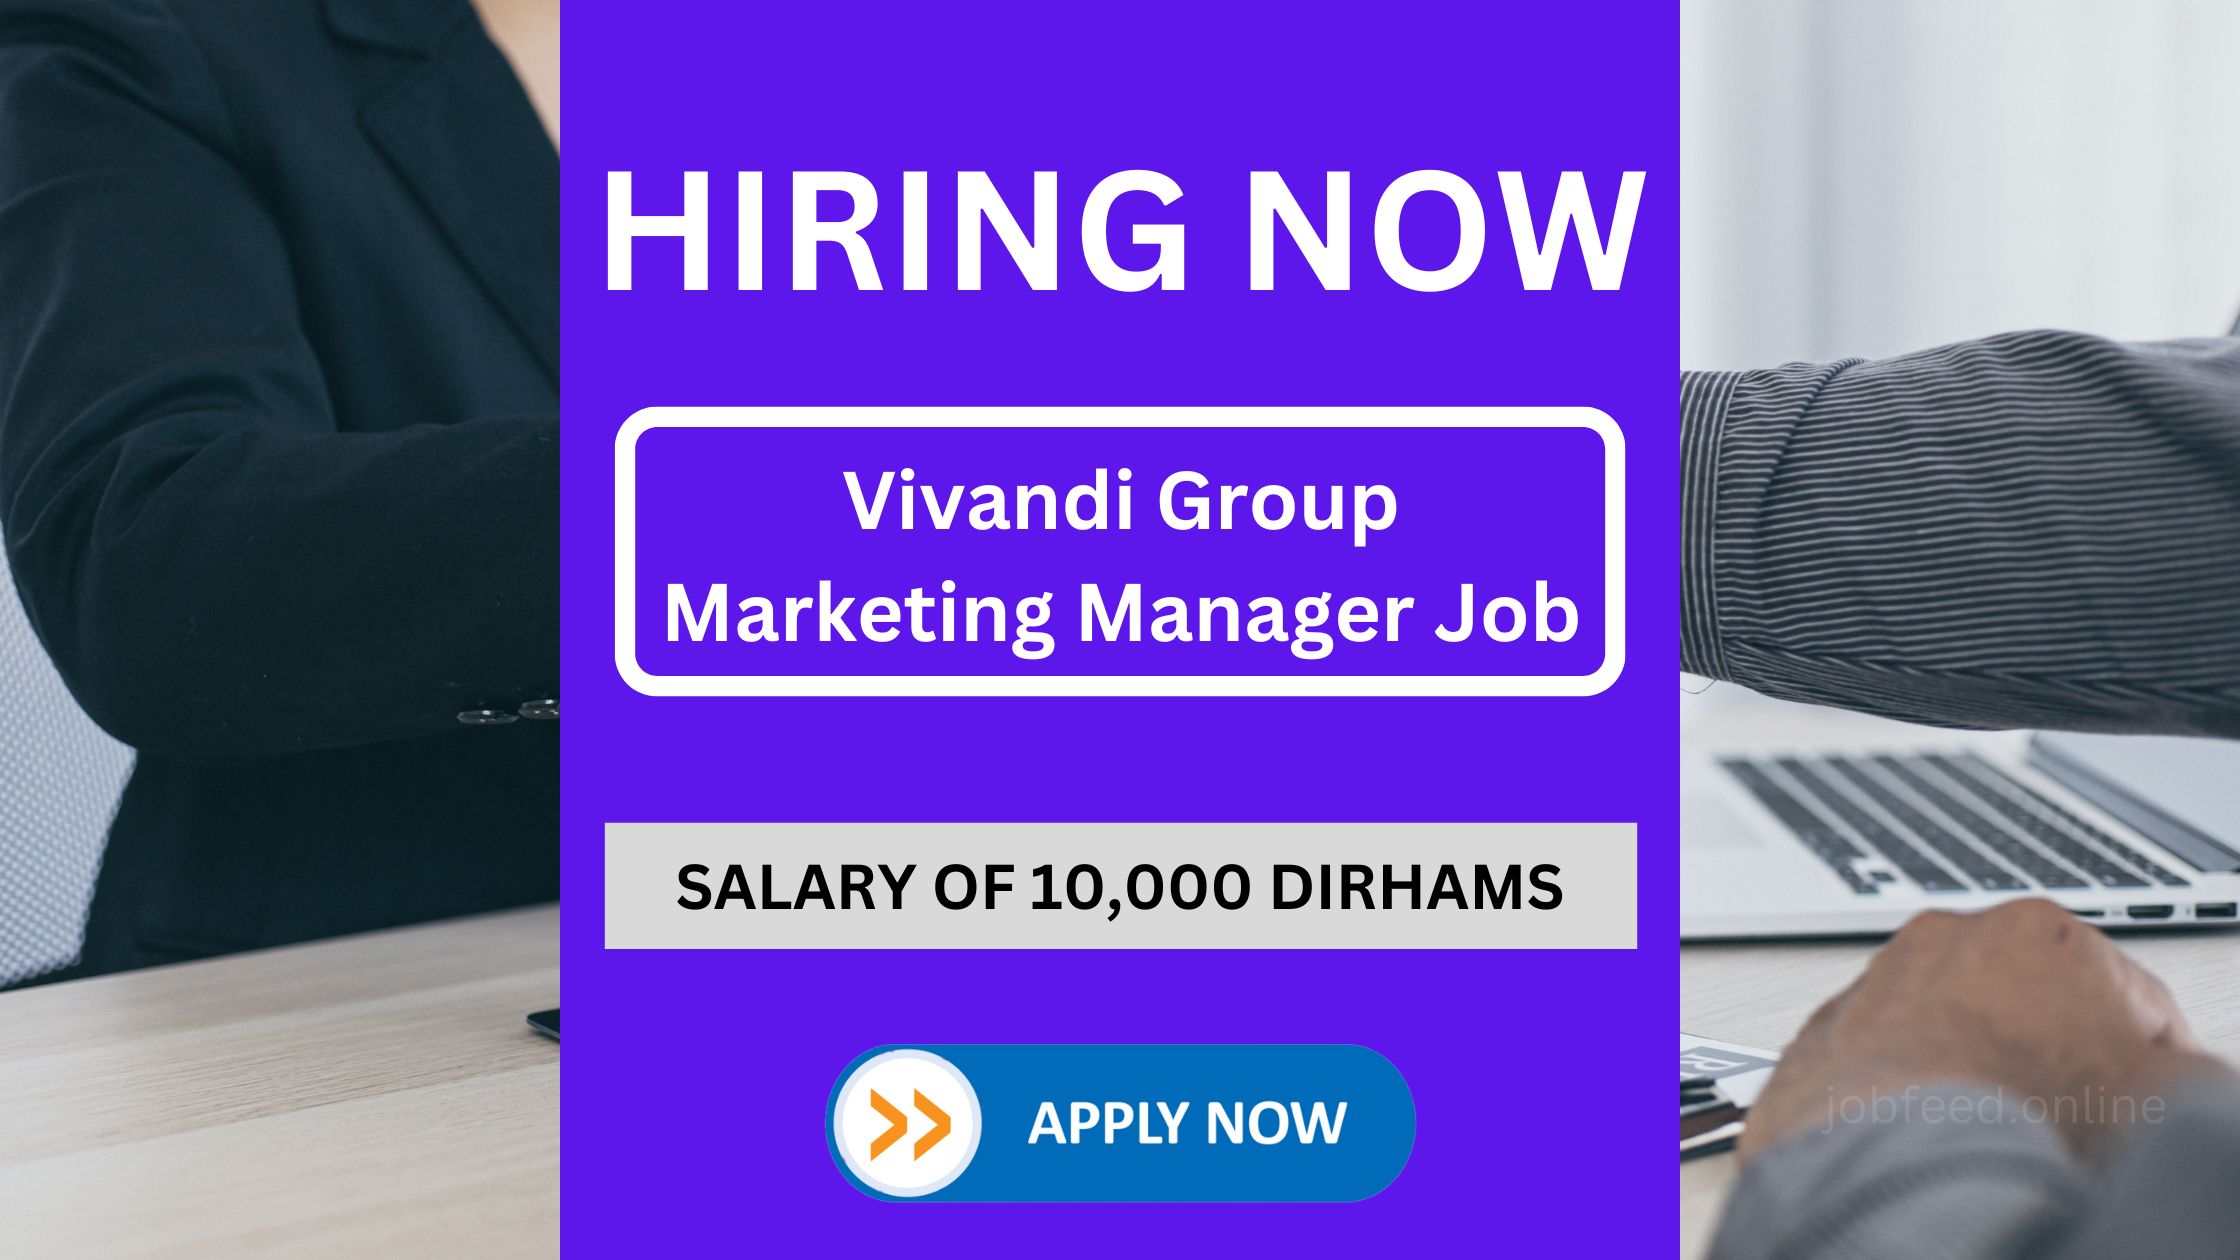 विवांडी ग्रुप ने 10,000 दिरहम के वेतन के साथ मार्केटिंग मैनेजर नौकरी रिक्ति की घोषणा की